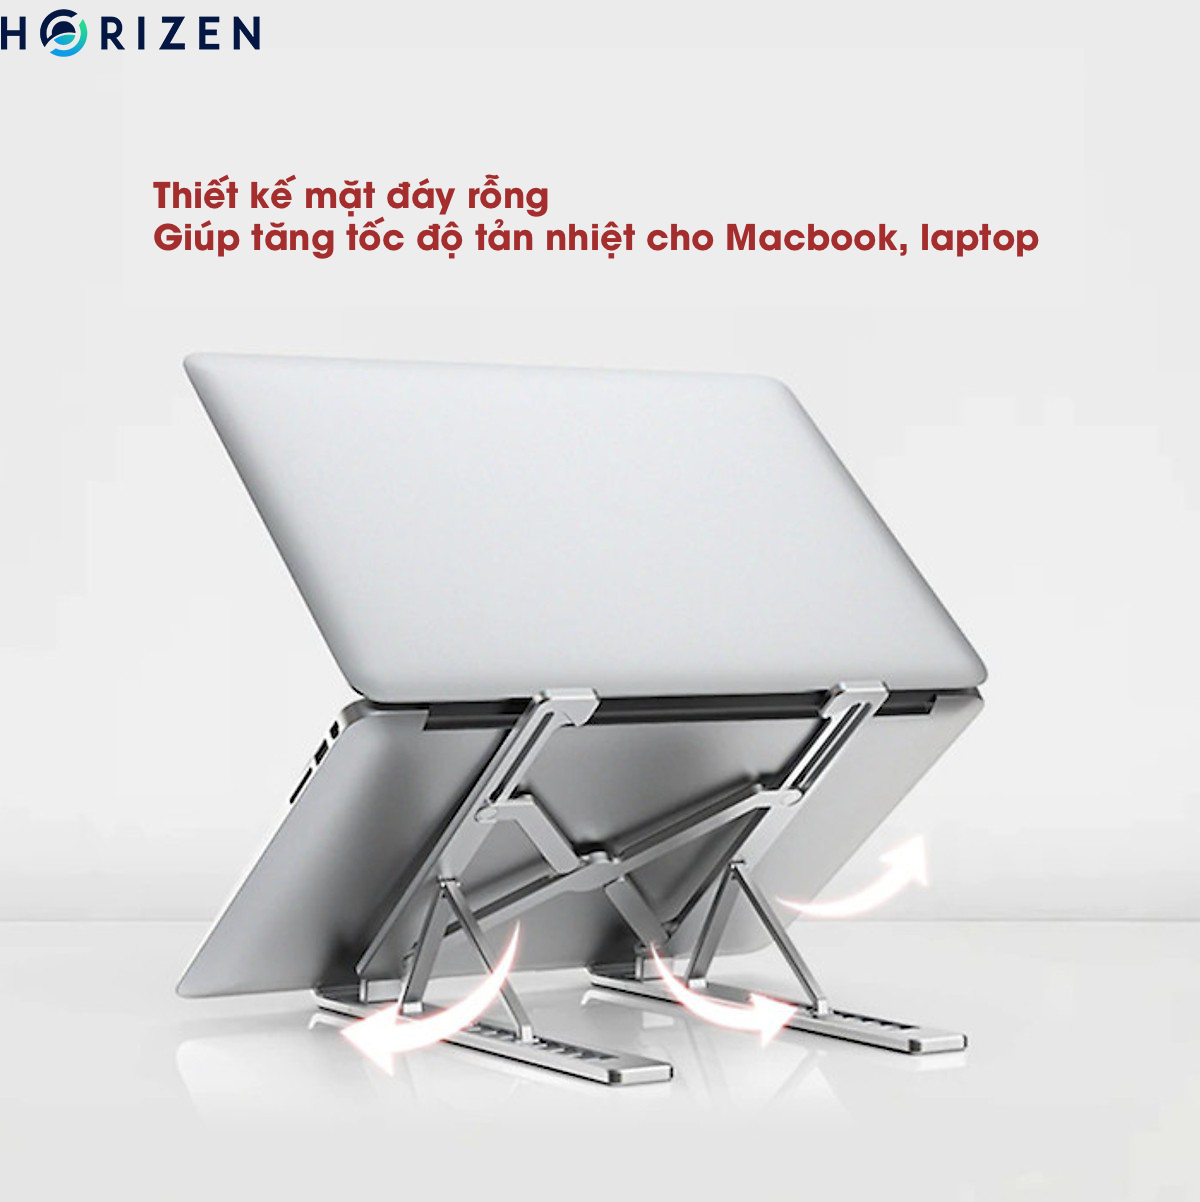 Đế tản nhiệt cho Laptop, Macbook - Giá đỡ, kệ đỡ, phụ kiện cao cấp cho Macbook, Laptop bằng hợp kim nhôm thông minh gấp gọn Horizen N1